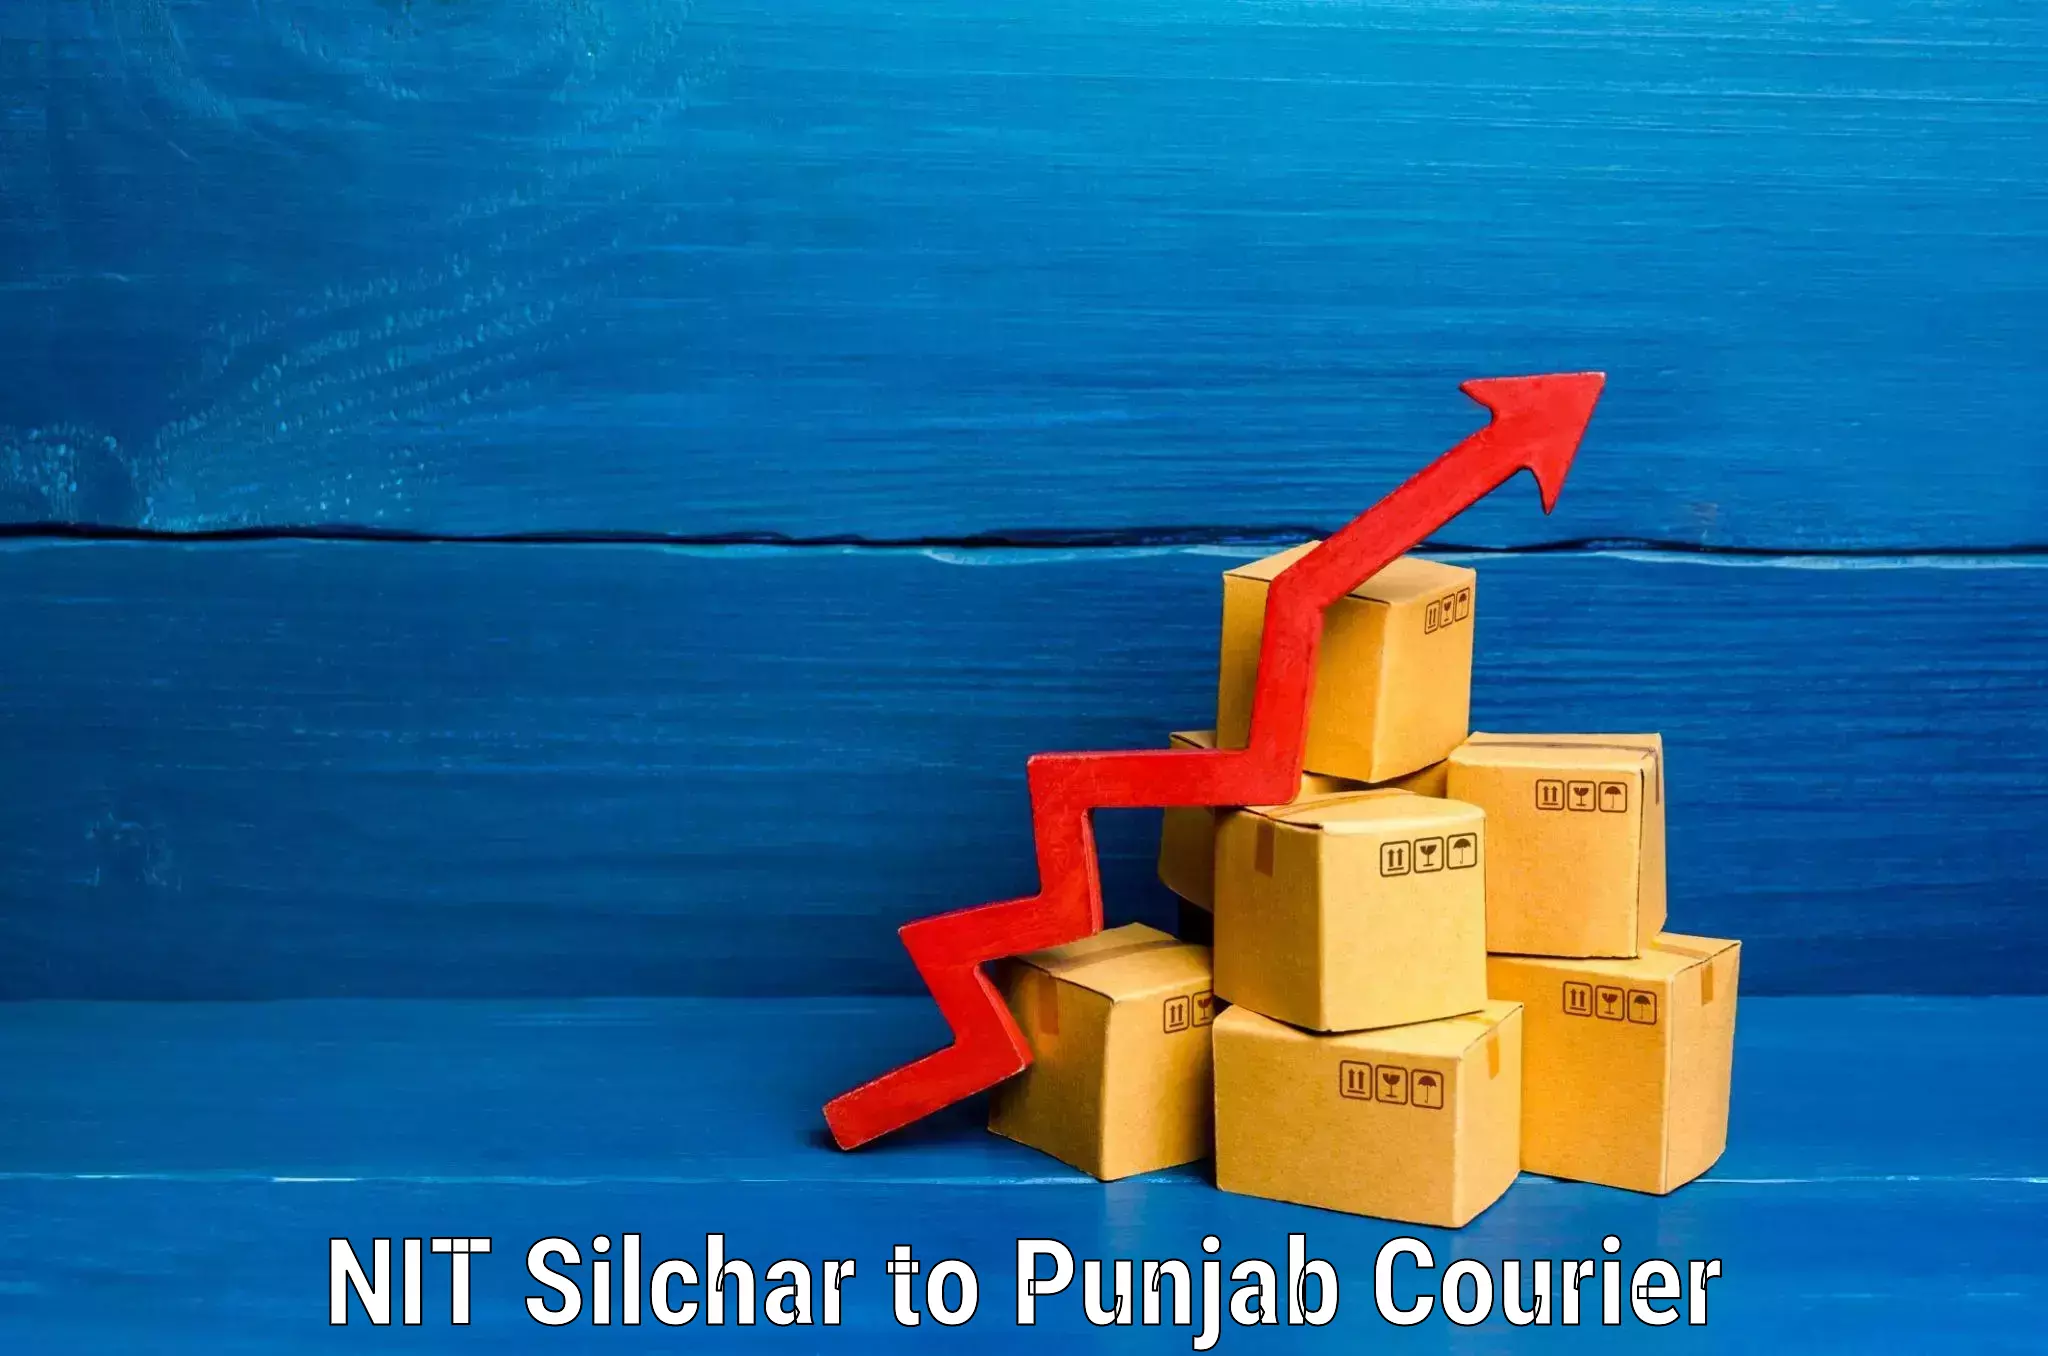 Emergency baggage service NIT Silchar to Punjab